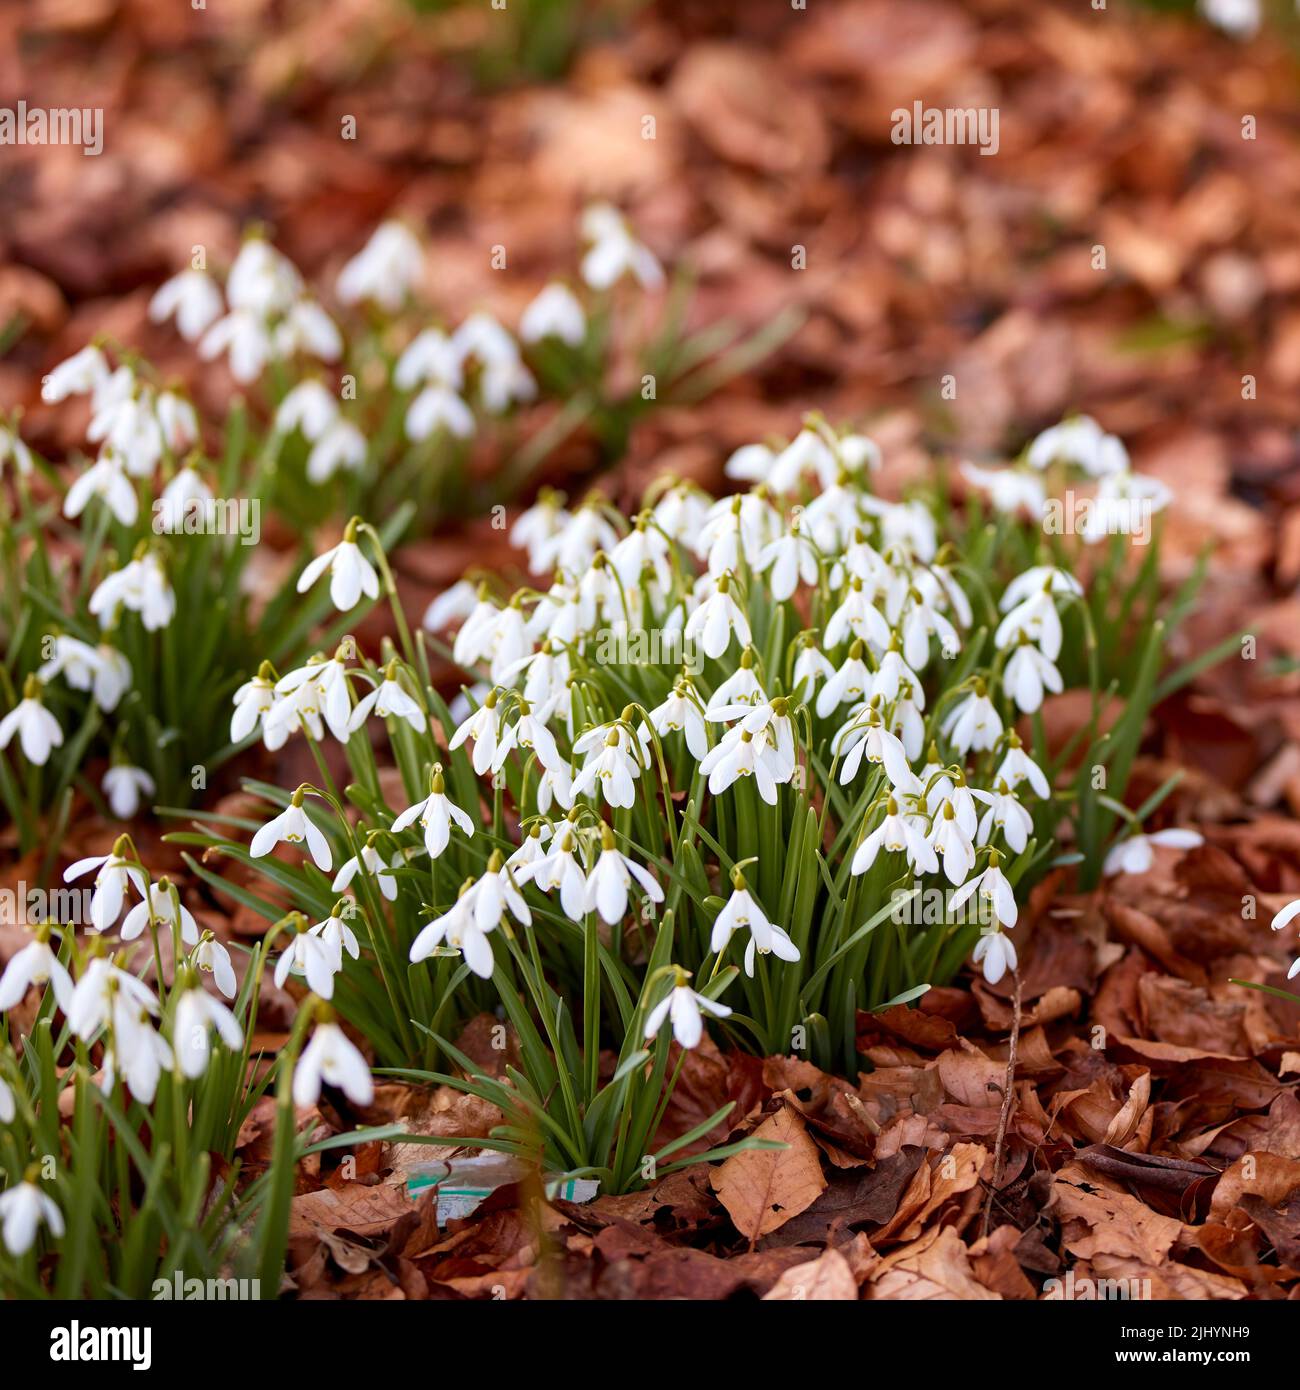 Hermosas flores blancas, al aire libre en un soleado día de primavera. Aislar jardín natural muestra plantas brillantes y florecientes que crean calma, serena y tranquila Foto de stock